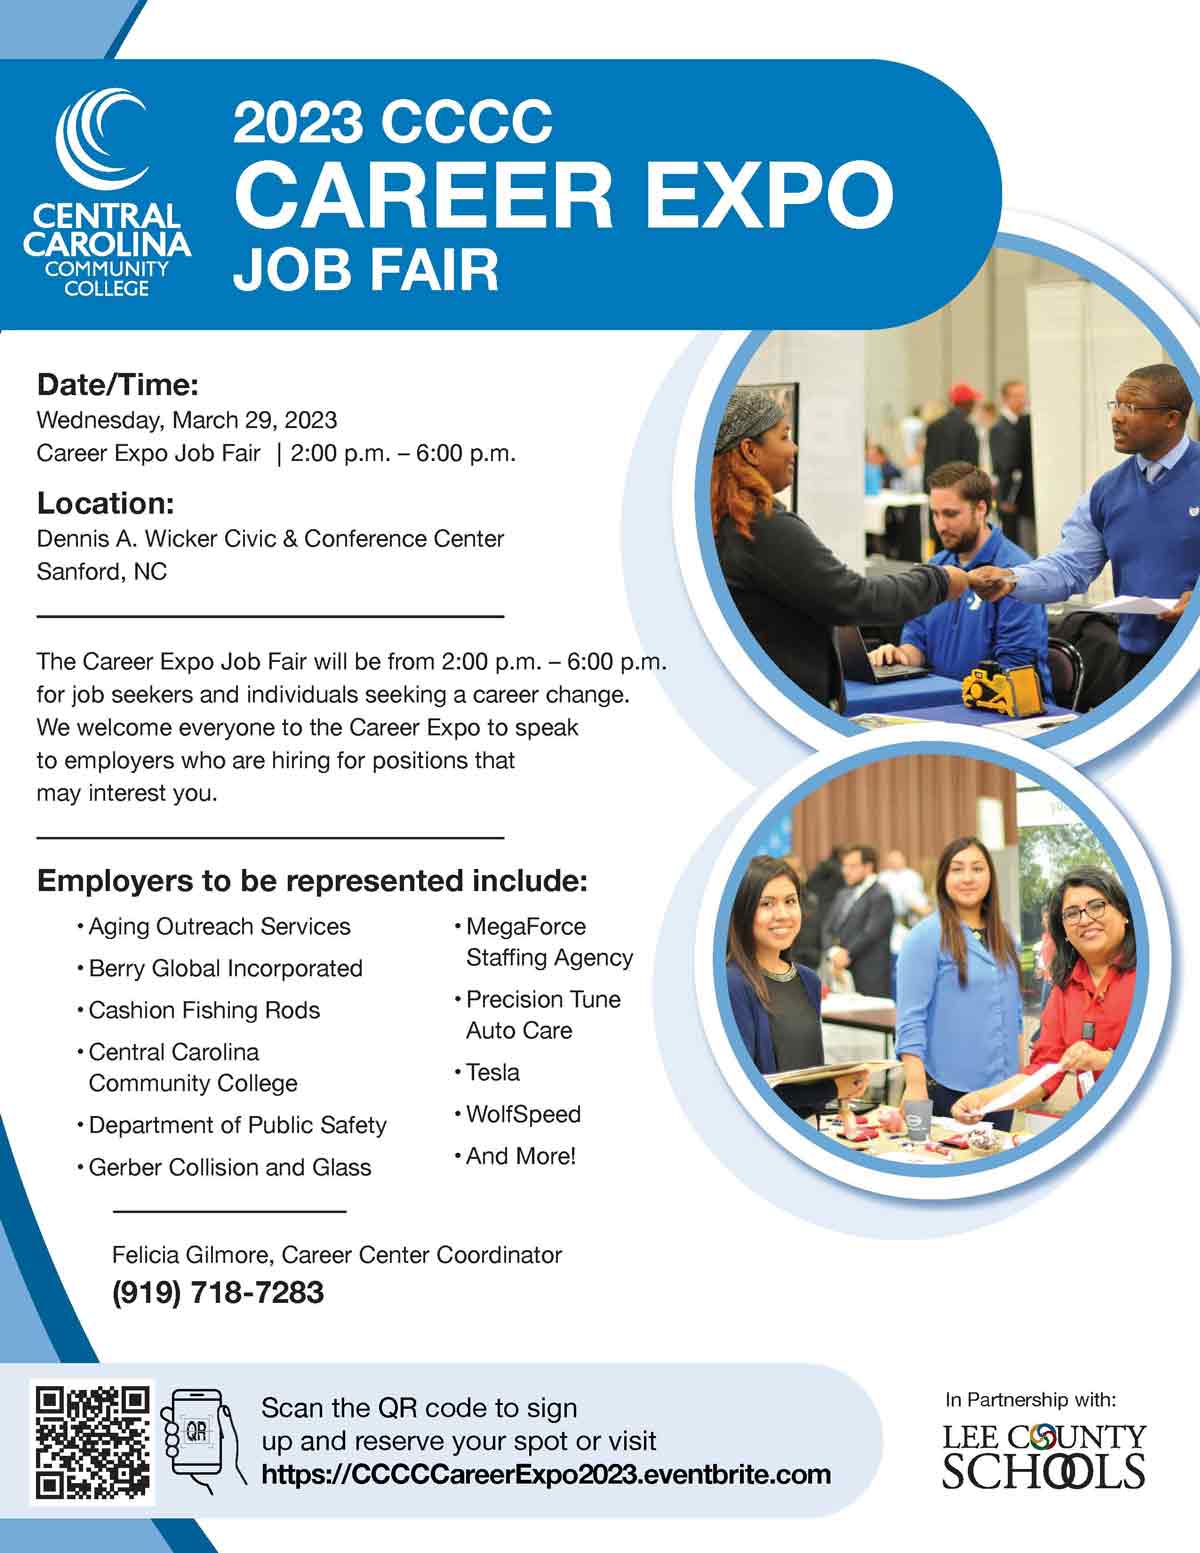 CCCC will host Career Expo Job Fair on March 29